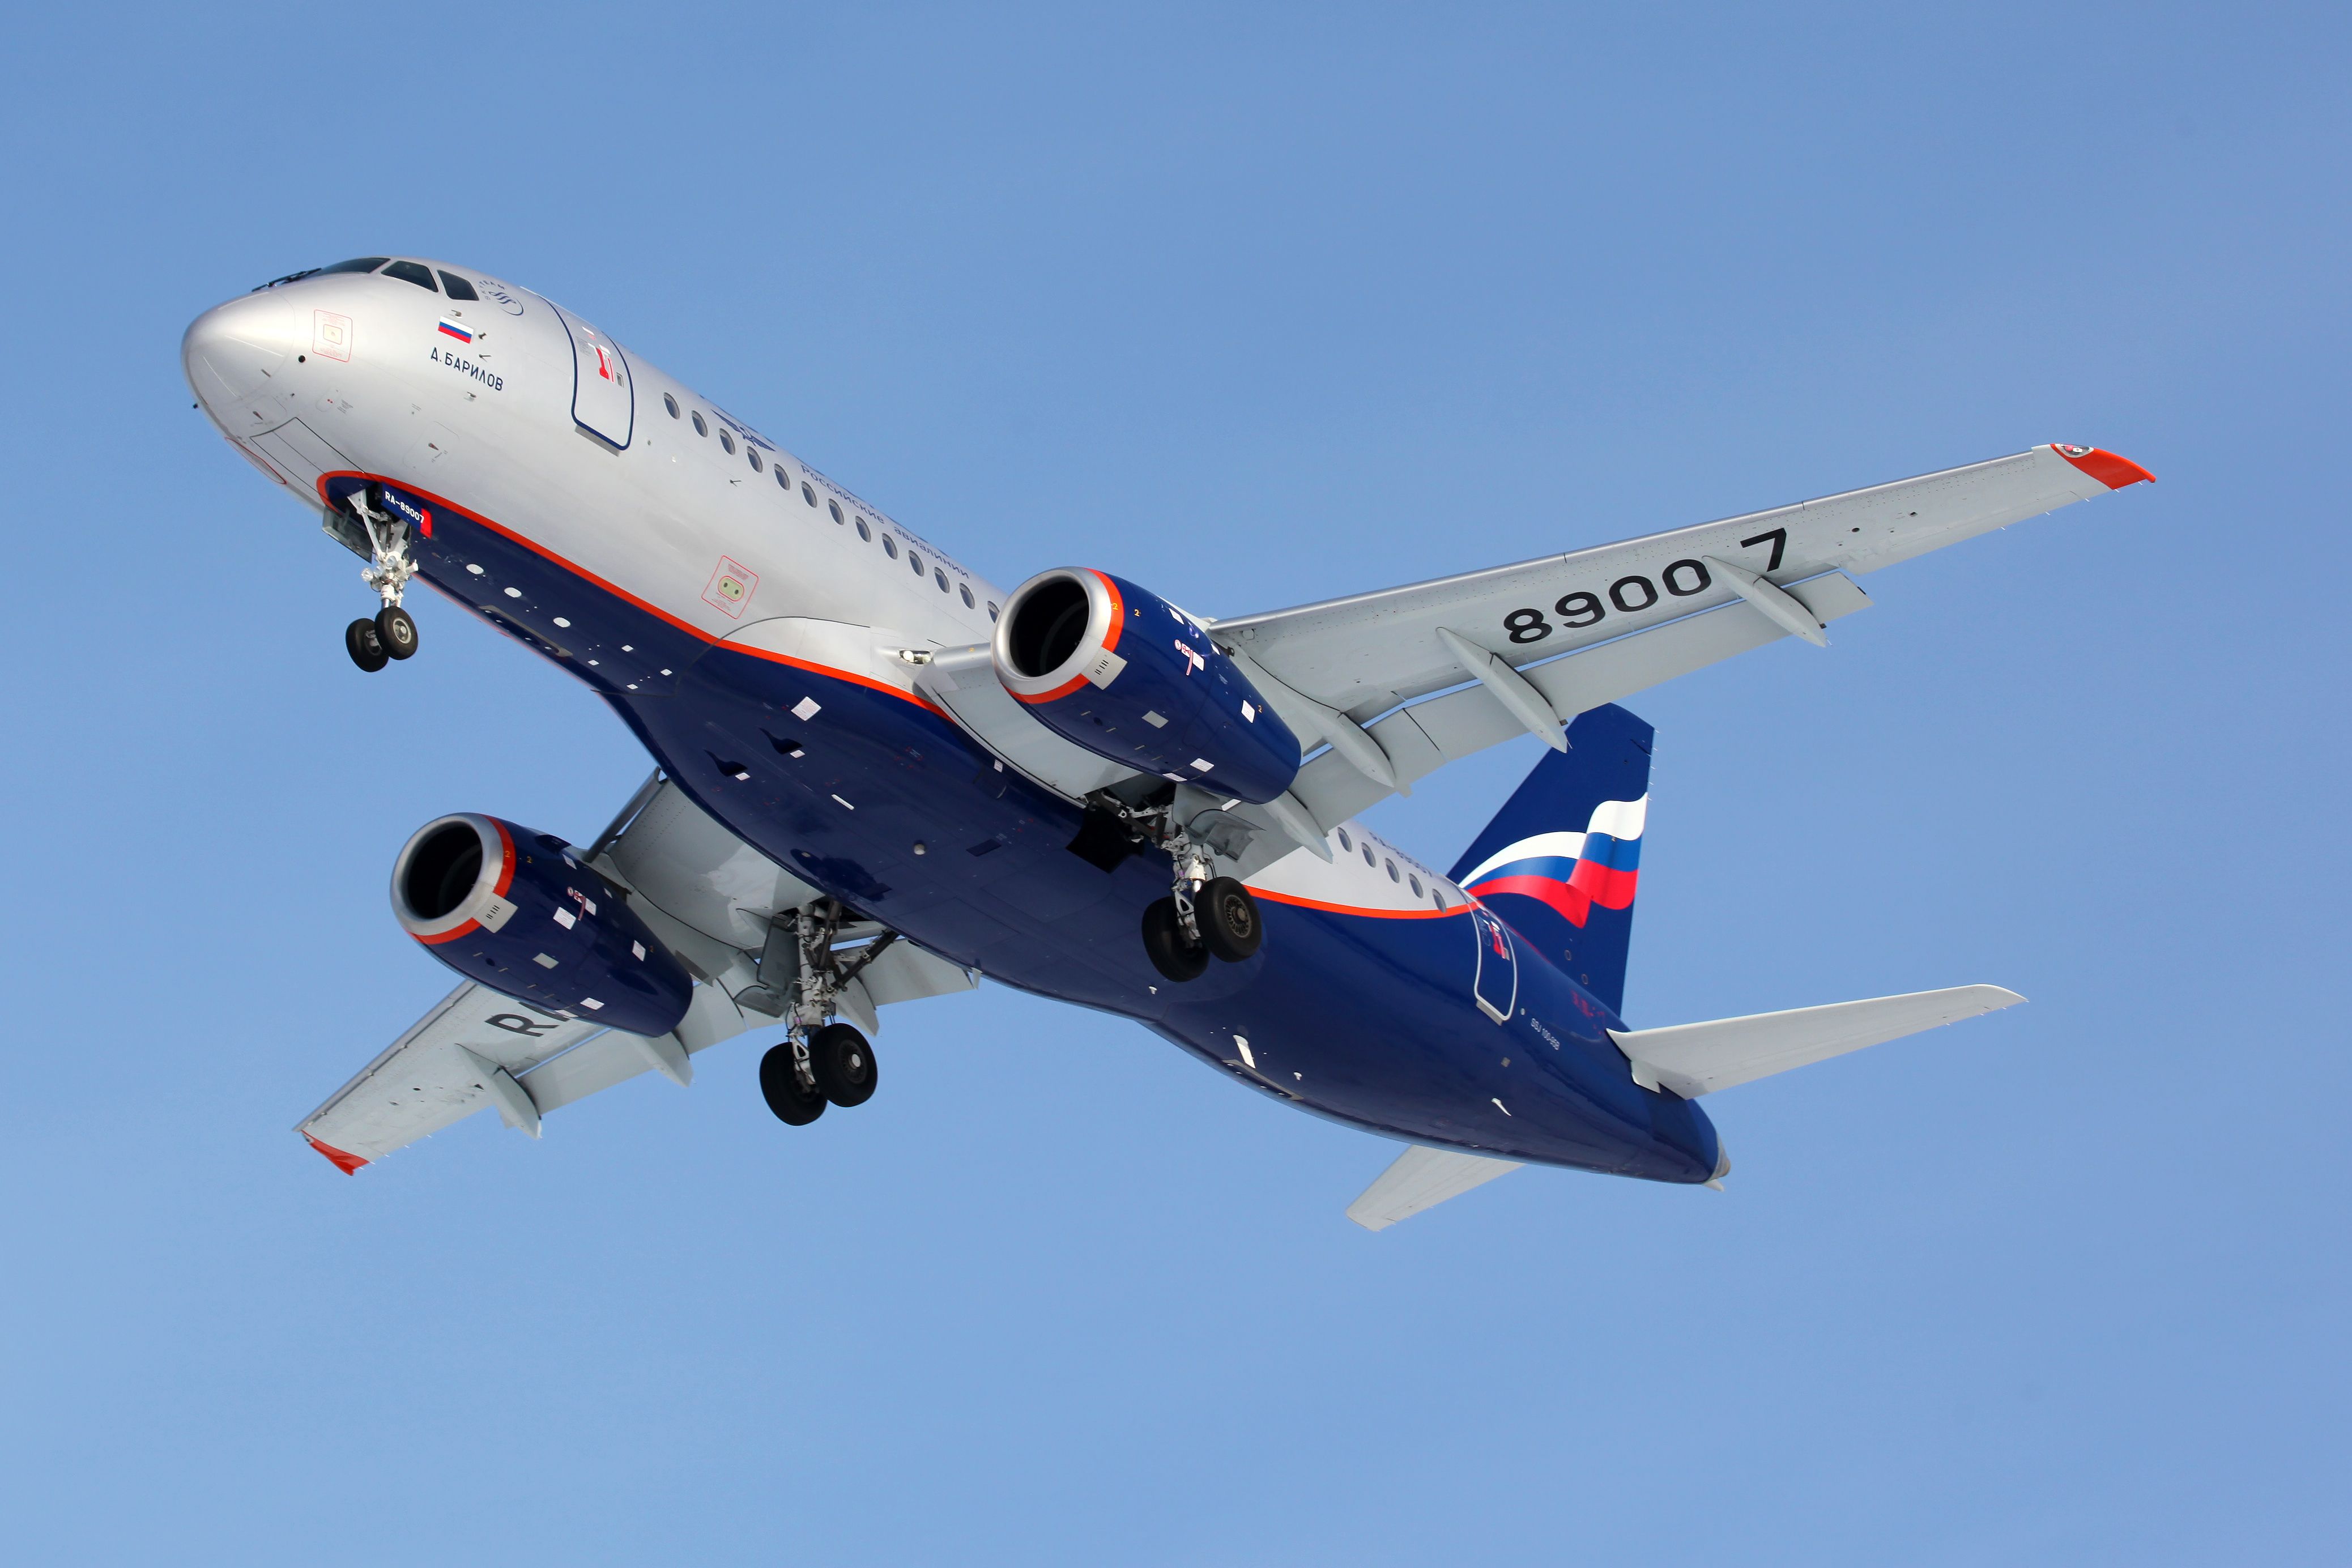 Aeroflot's Sukhoi Superjet 100 landing